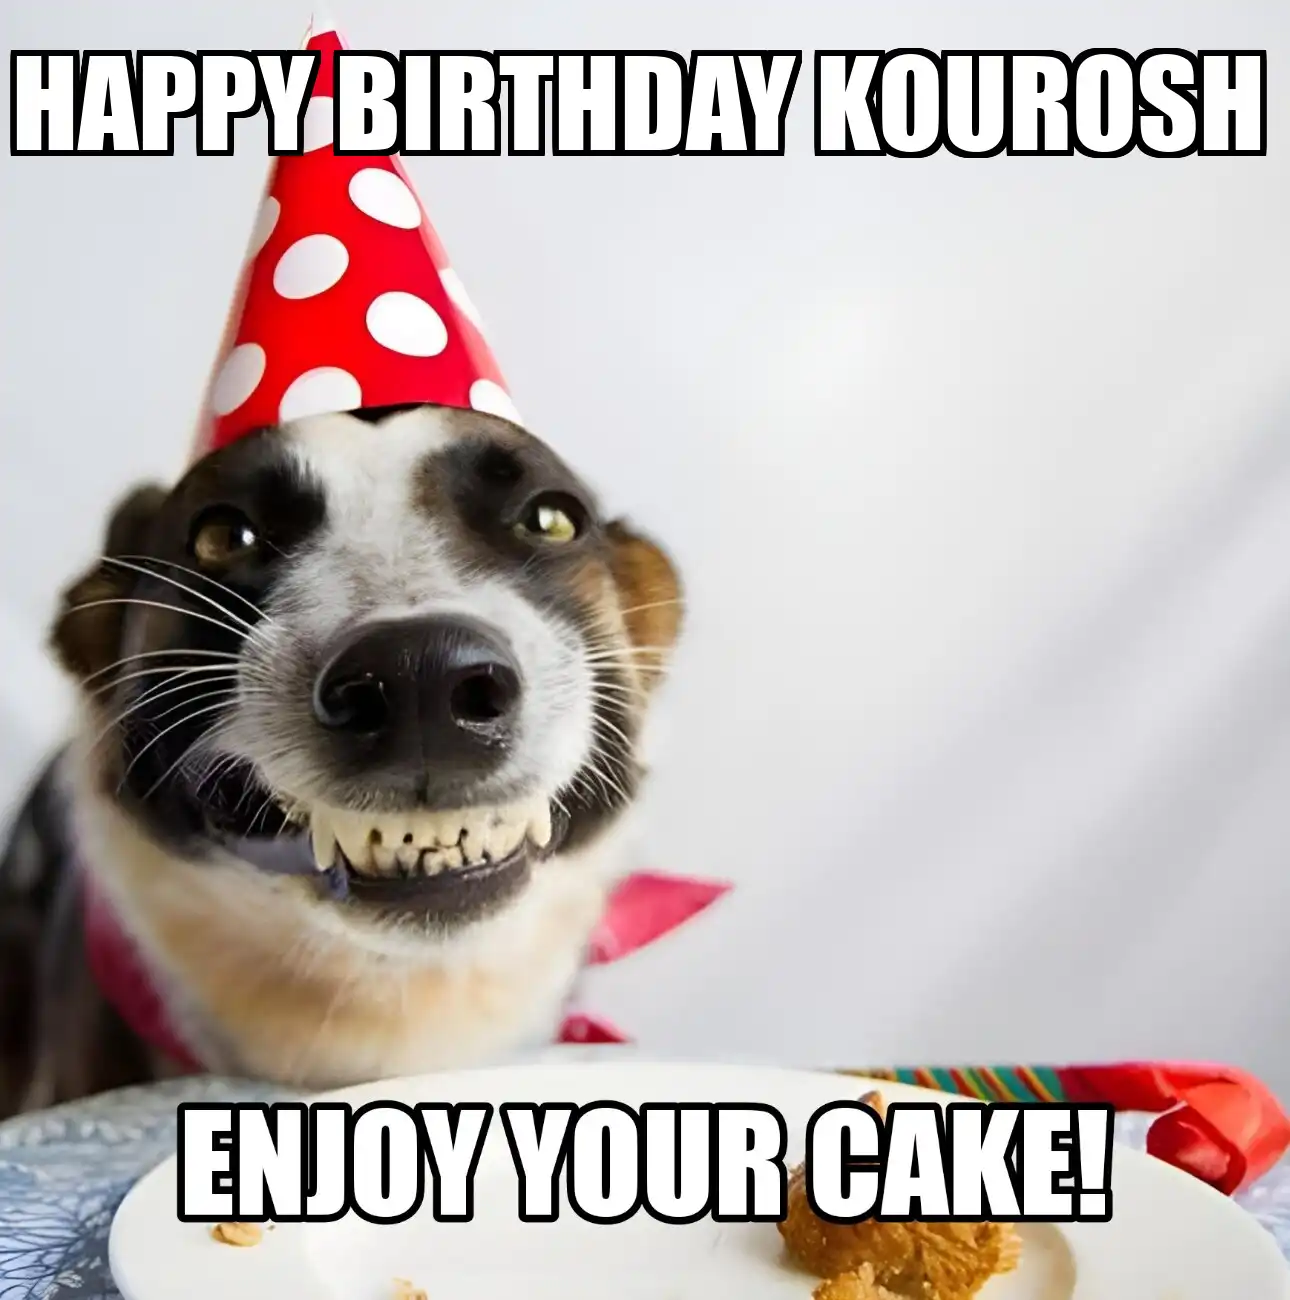 Happy Birthday Kourosh Enjoy Your Cake Dog Meme